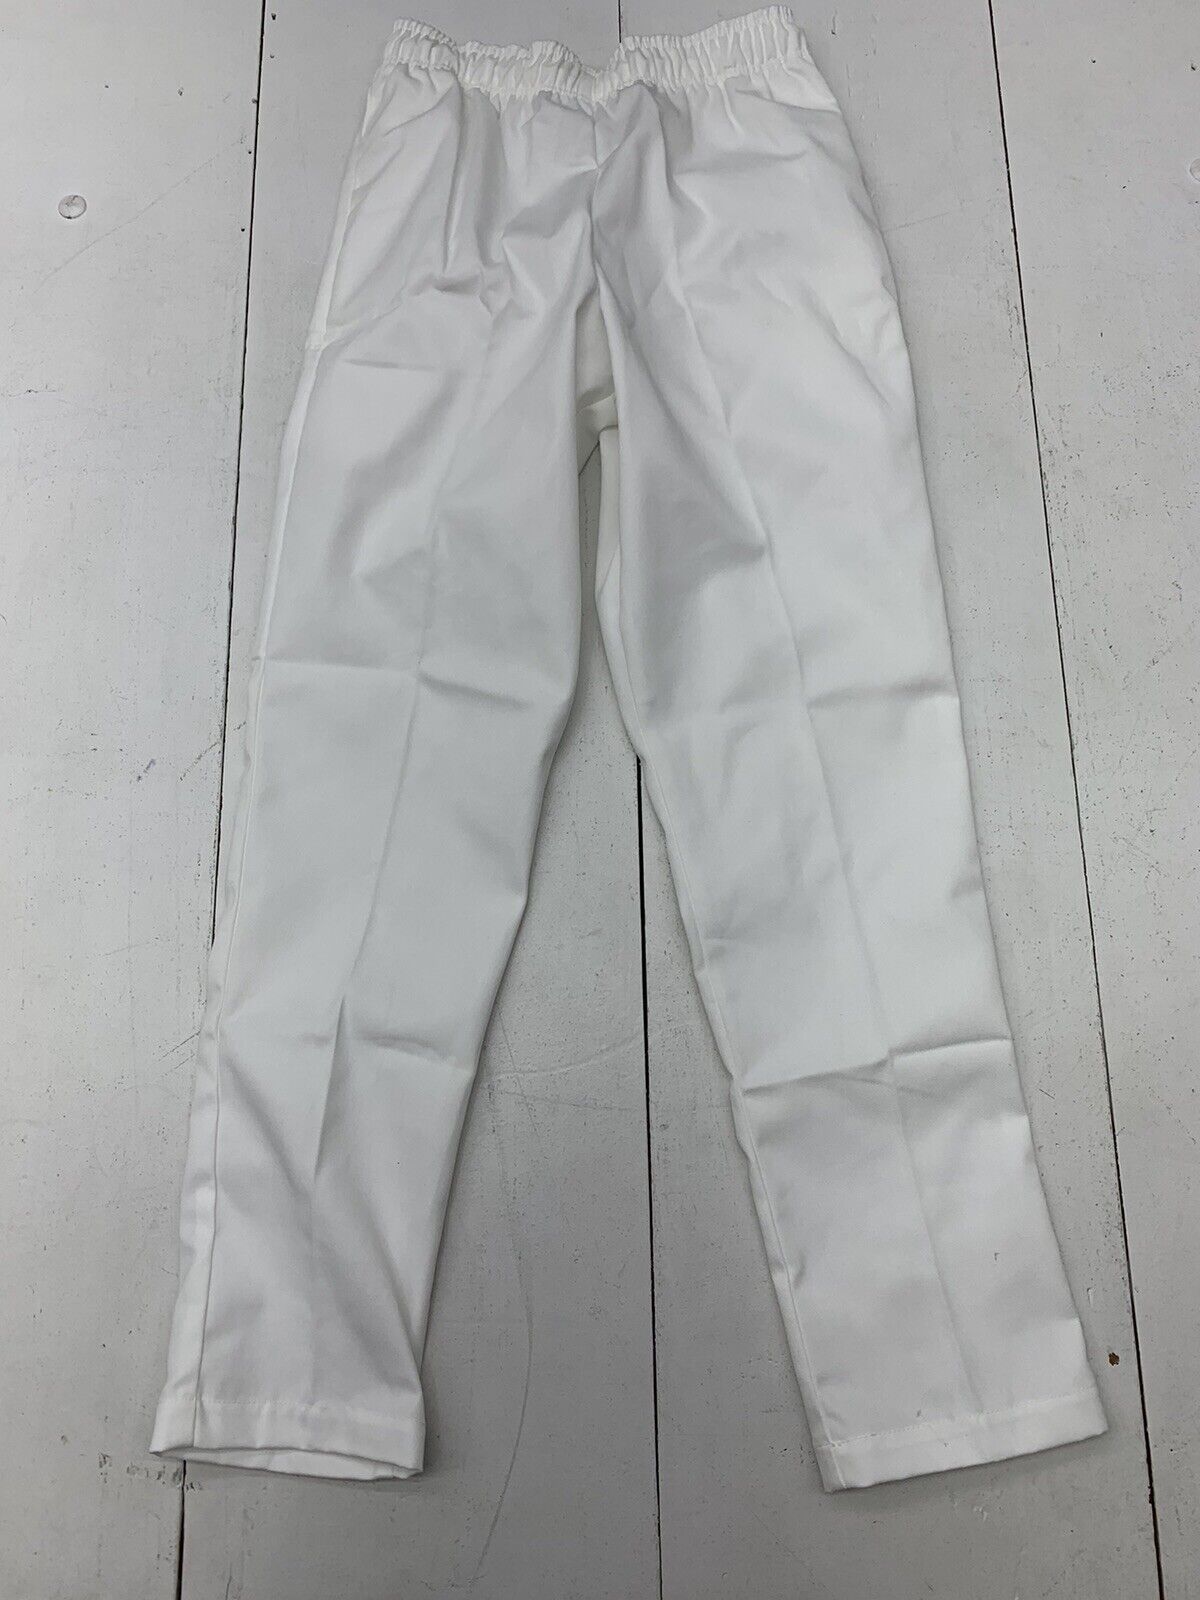 Womens White Drawstring Pants Size XL - beyond exchange